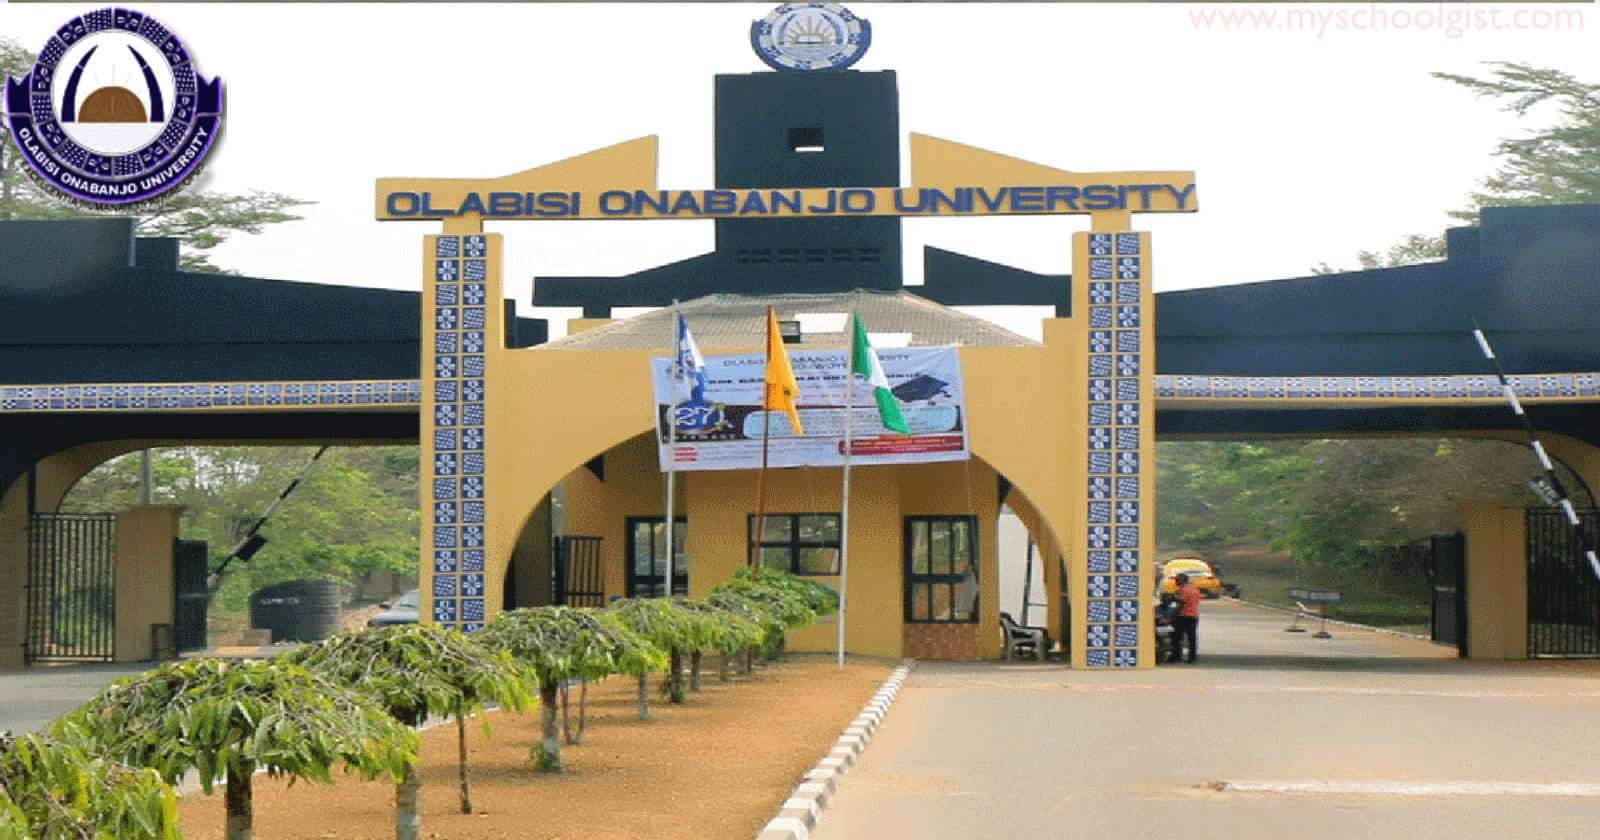 Olabisi Onabanjo University (OOU) Matriculation Ceremony